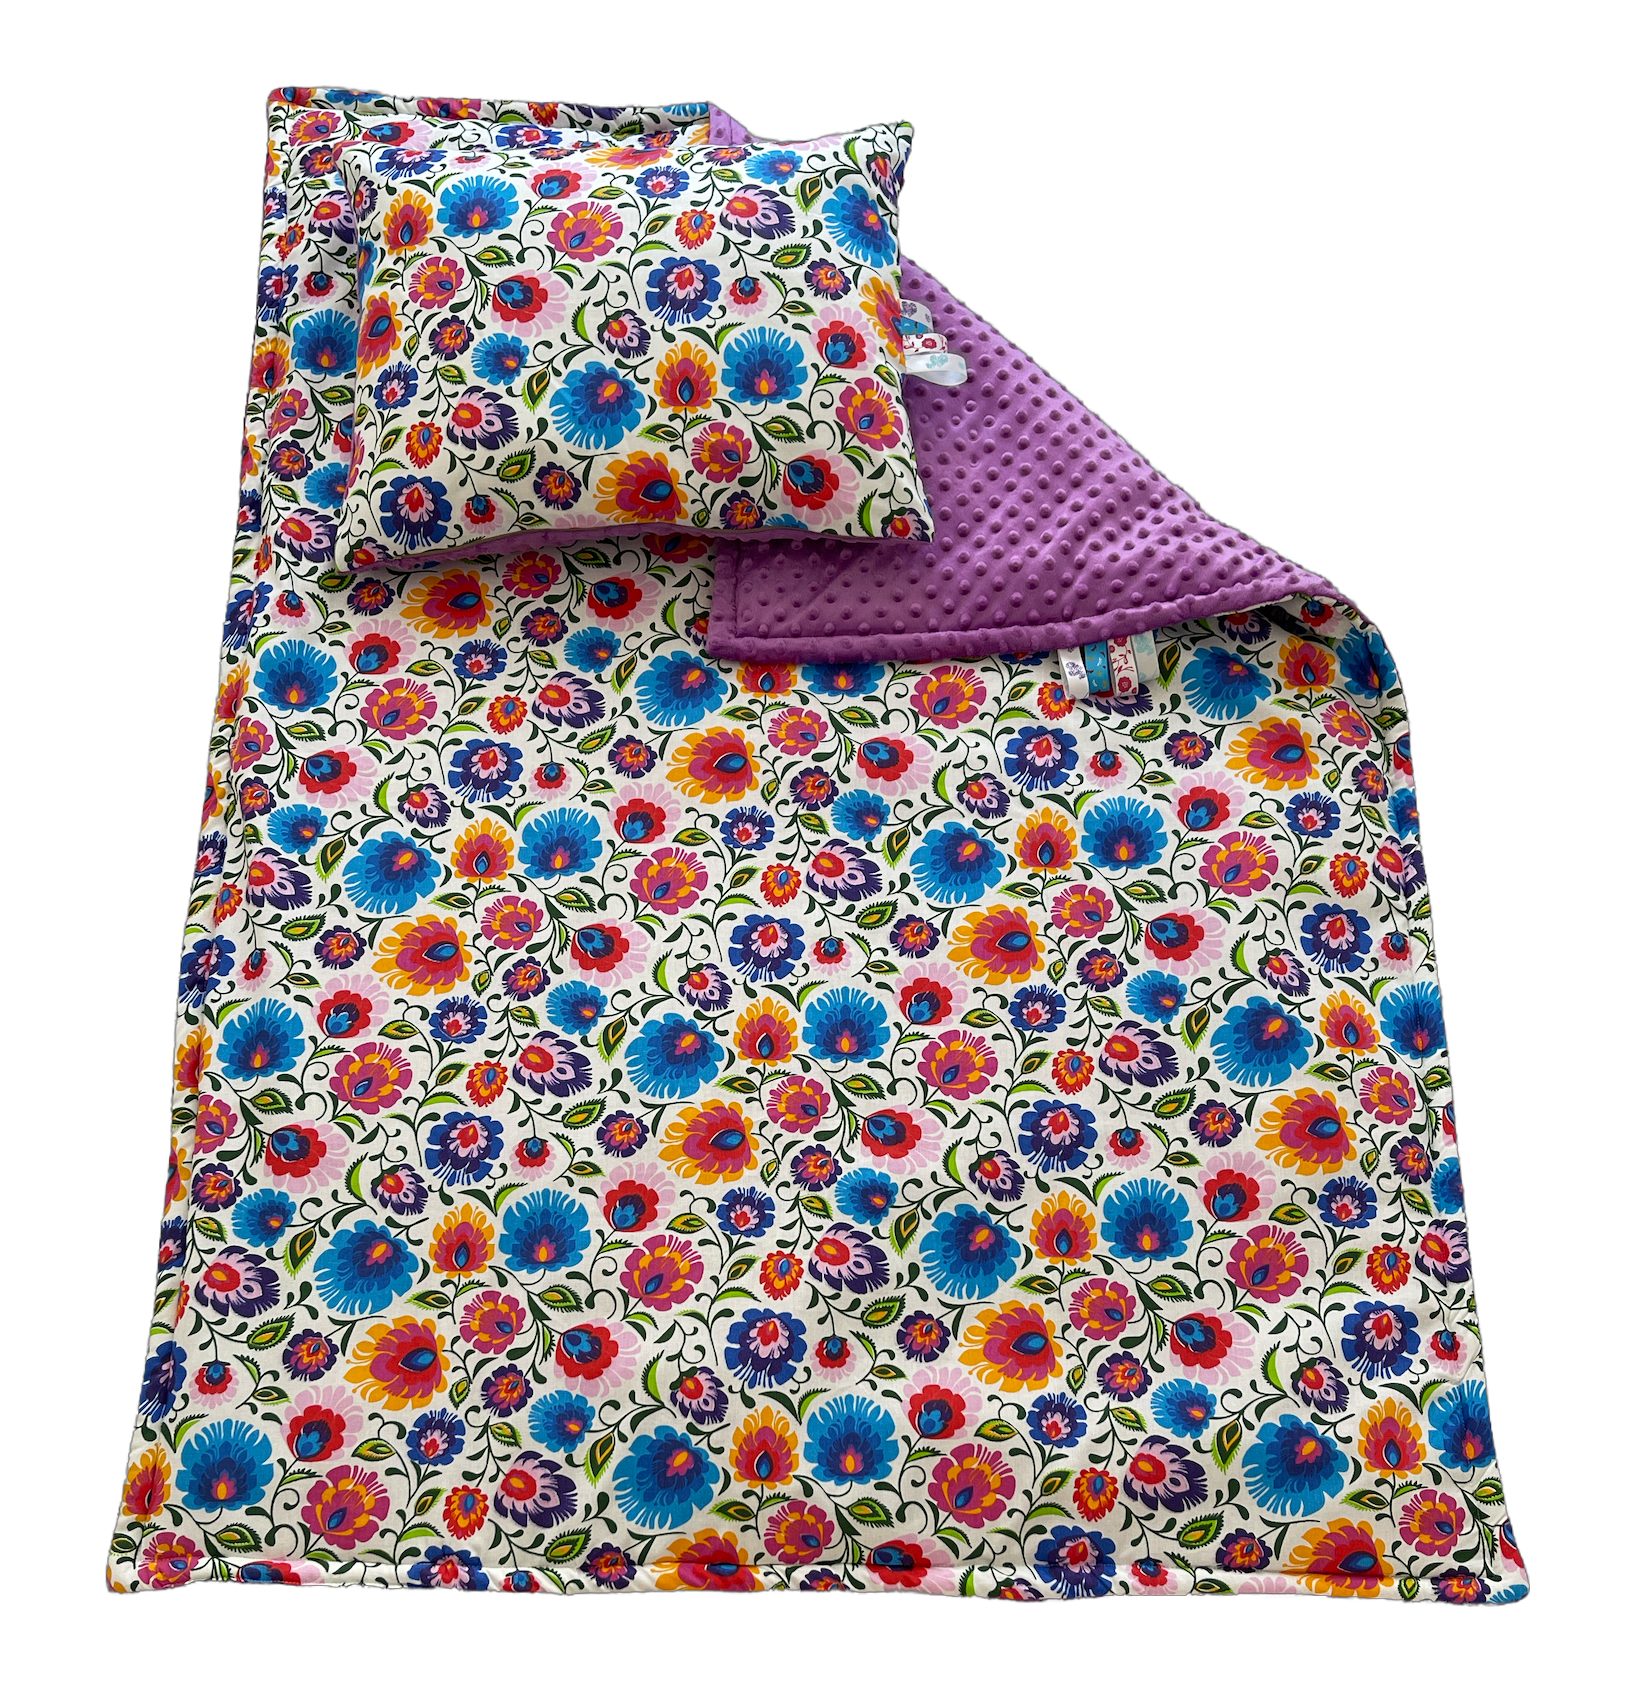 RoKo-Textilien, Krabbeldecke mit 40x50cm, Kinderdecke 100x135cm Kinderdecke Kinderbettdecke mit Bänder Kopfkissen